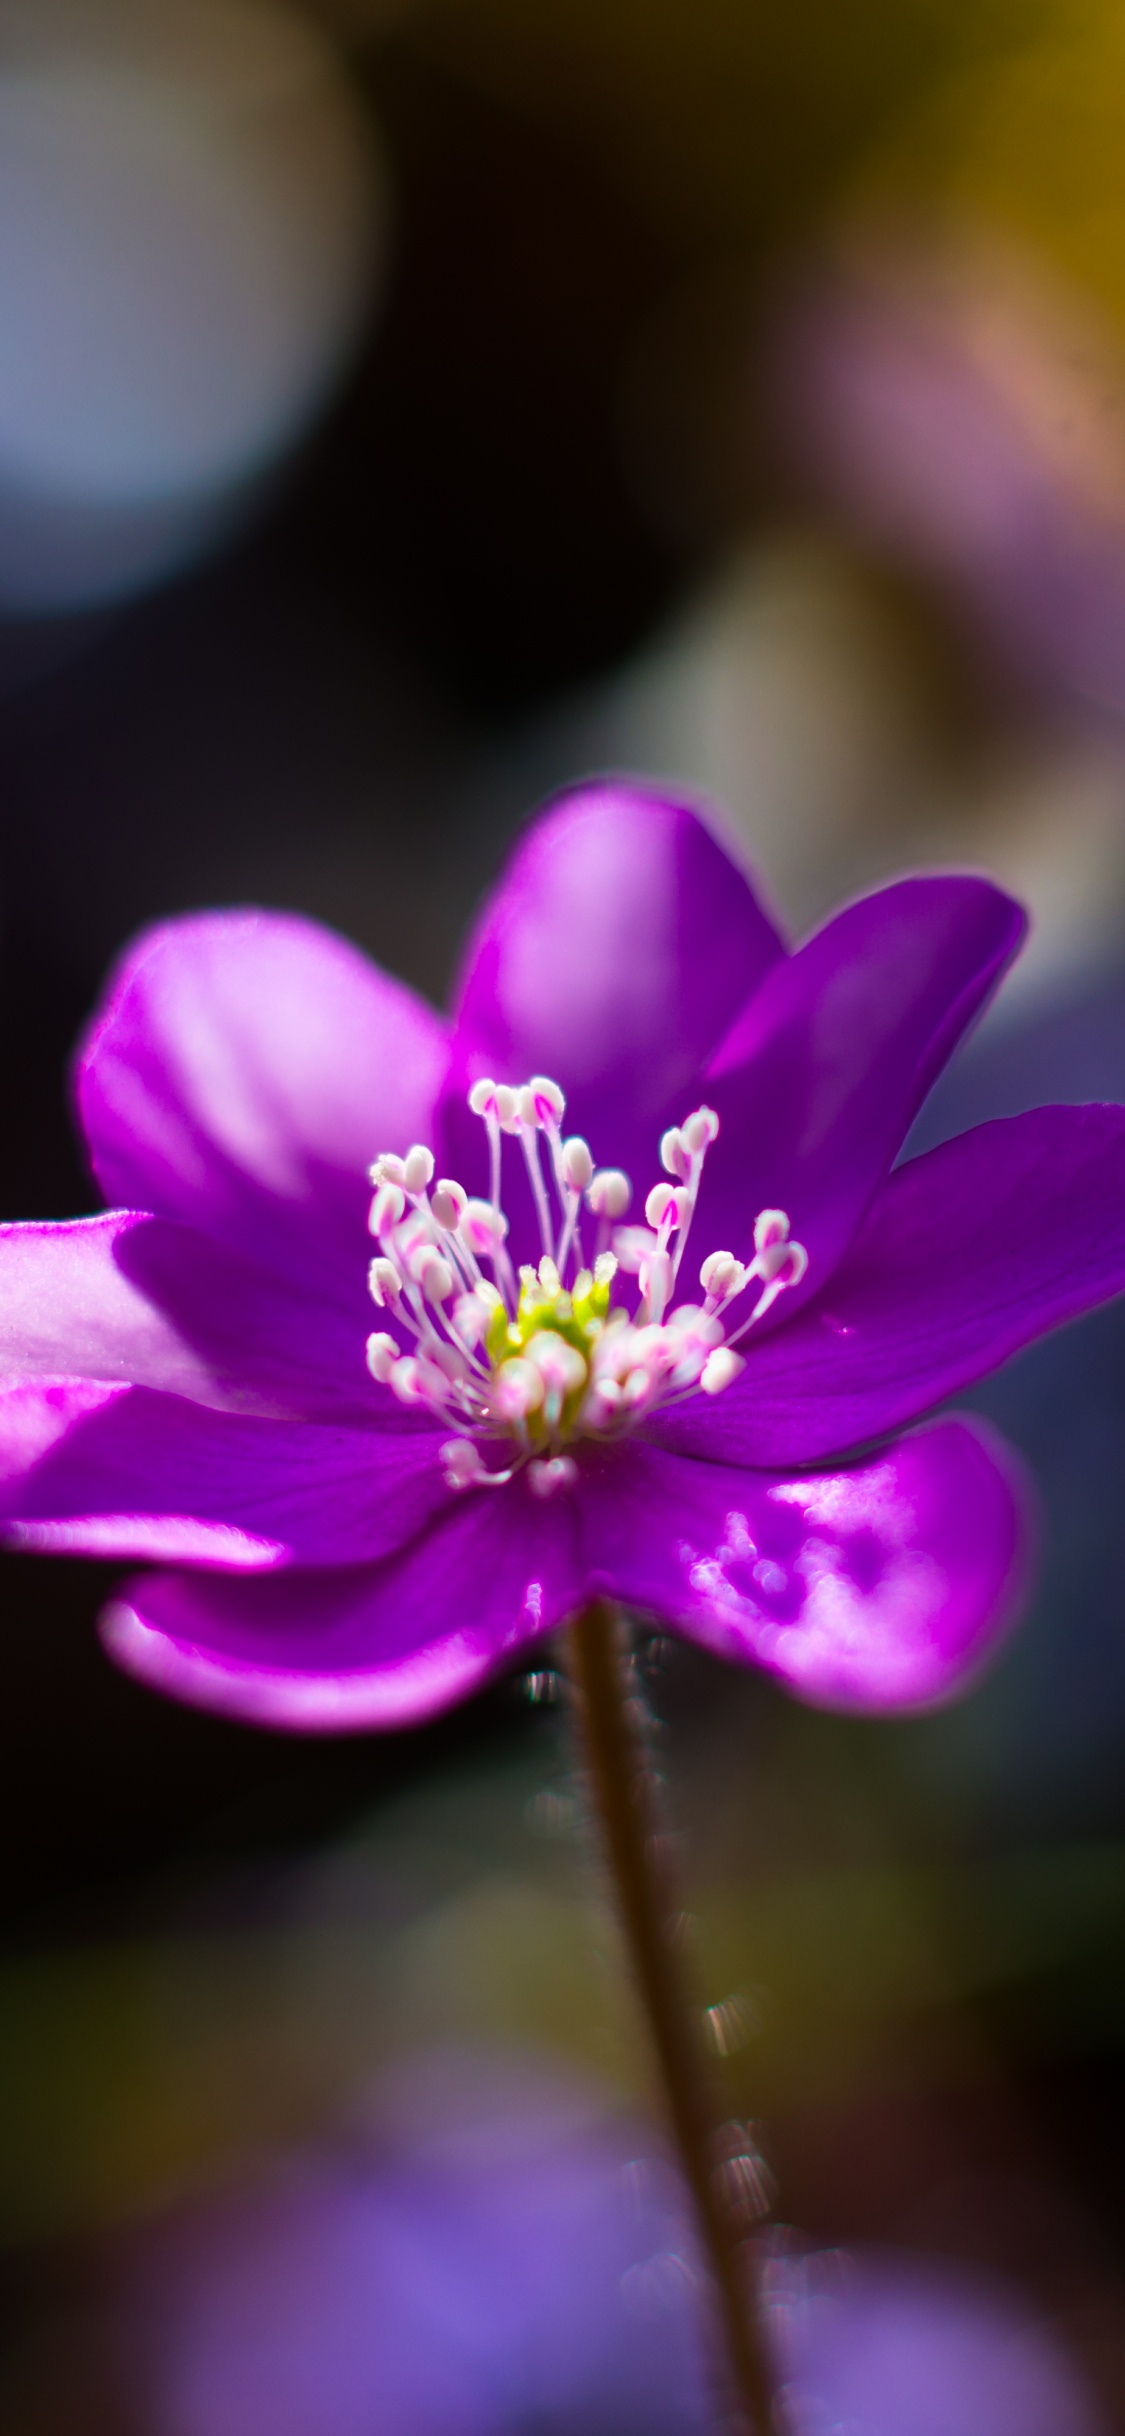 Purple Flower in Tilt Shift Lens. Wallpaper in 1125x2436 Resolution